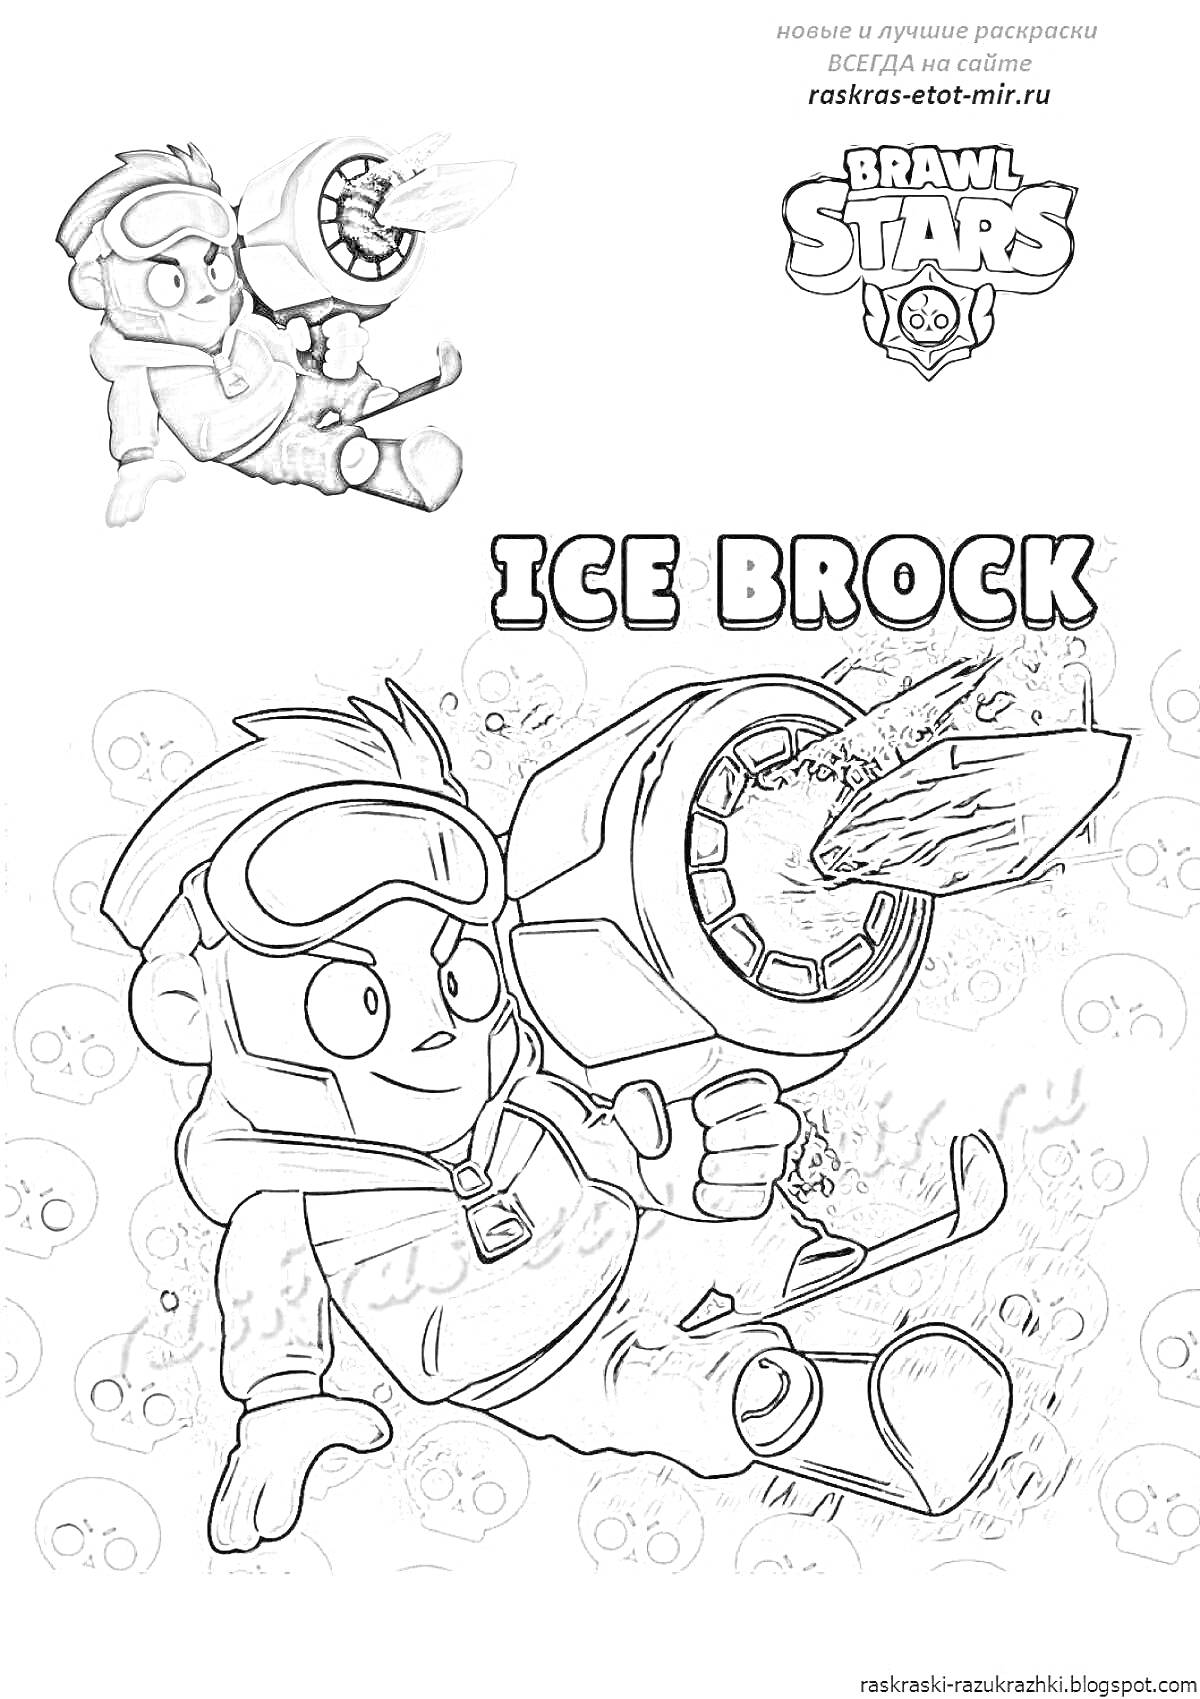 Раскраска Ice Brock обстреливает из гигантского ледяного бластера, на заднем плане броулер стреляющий из огнемета, логотип Brawl Stars, текст 